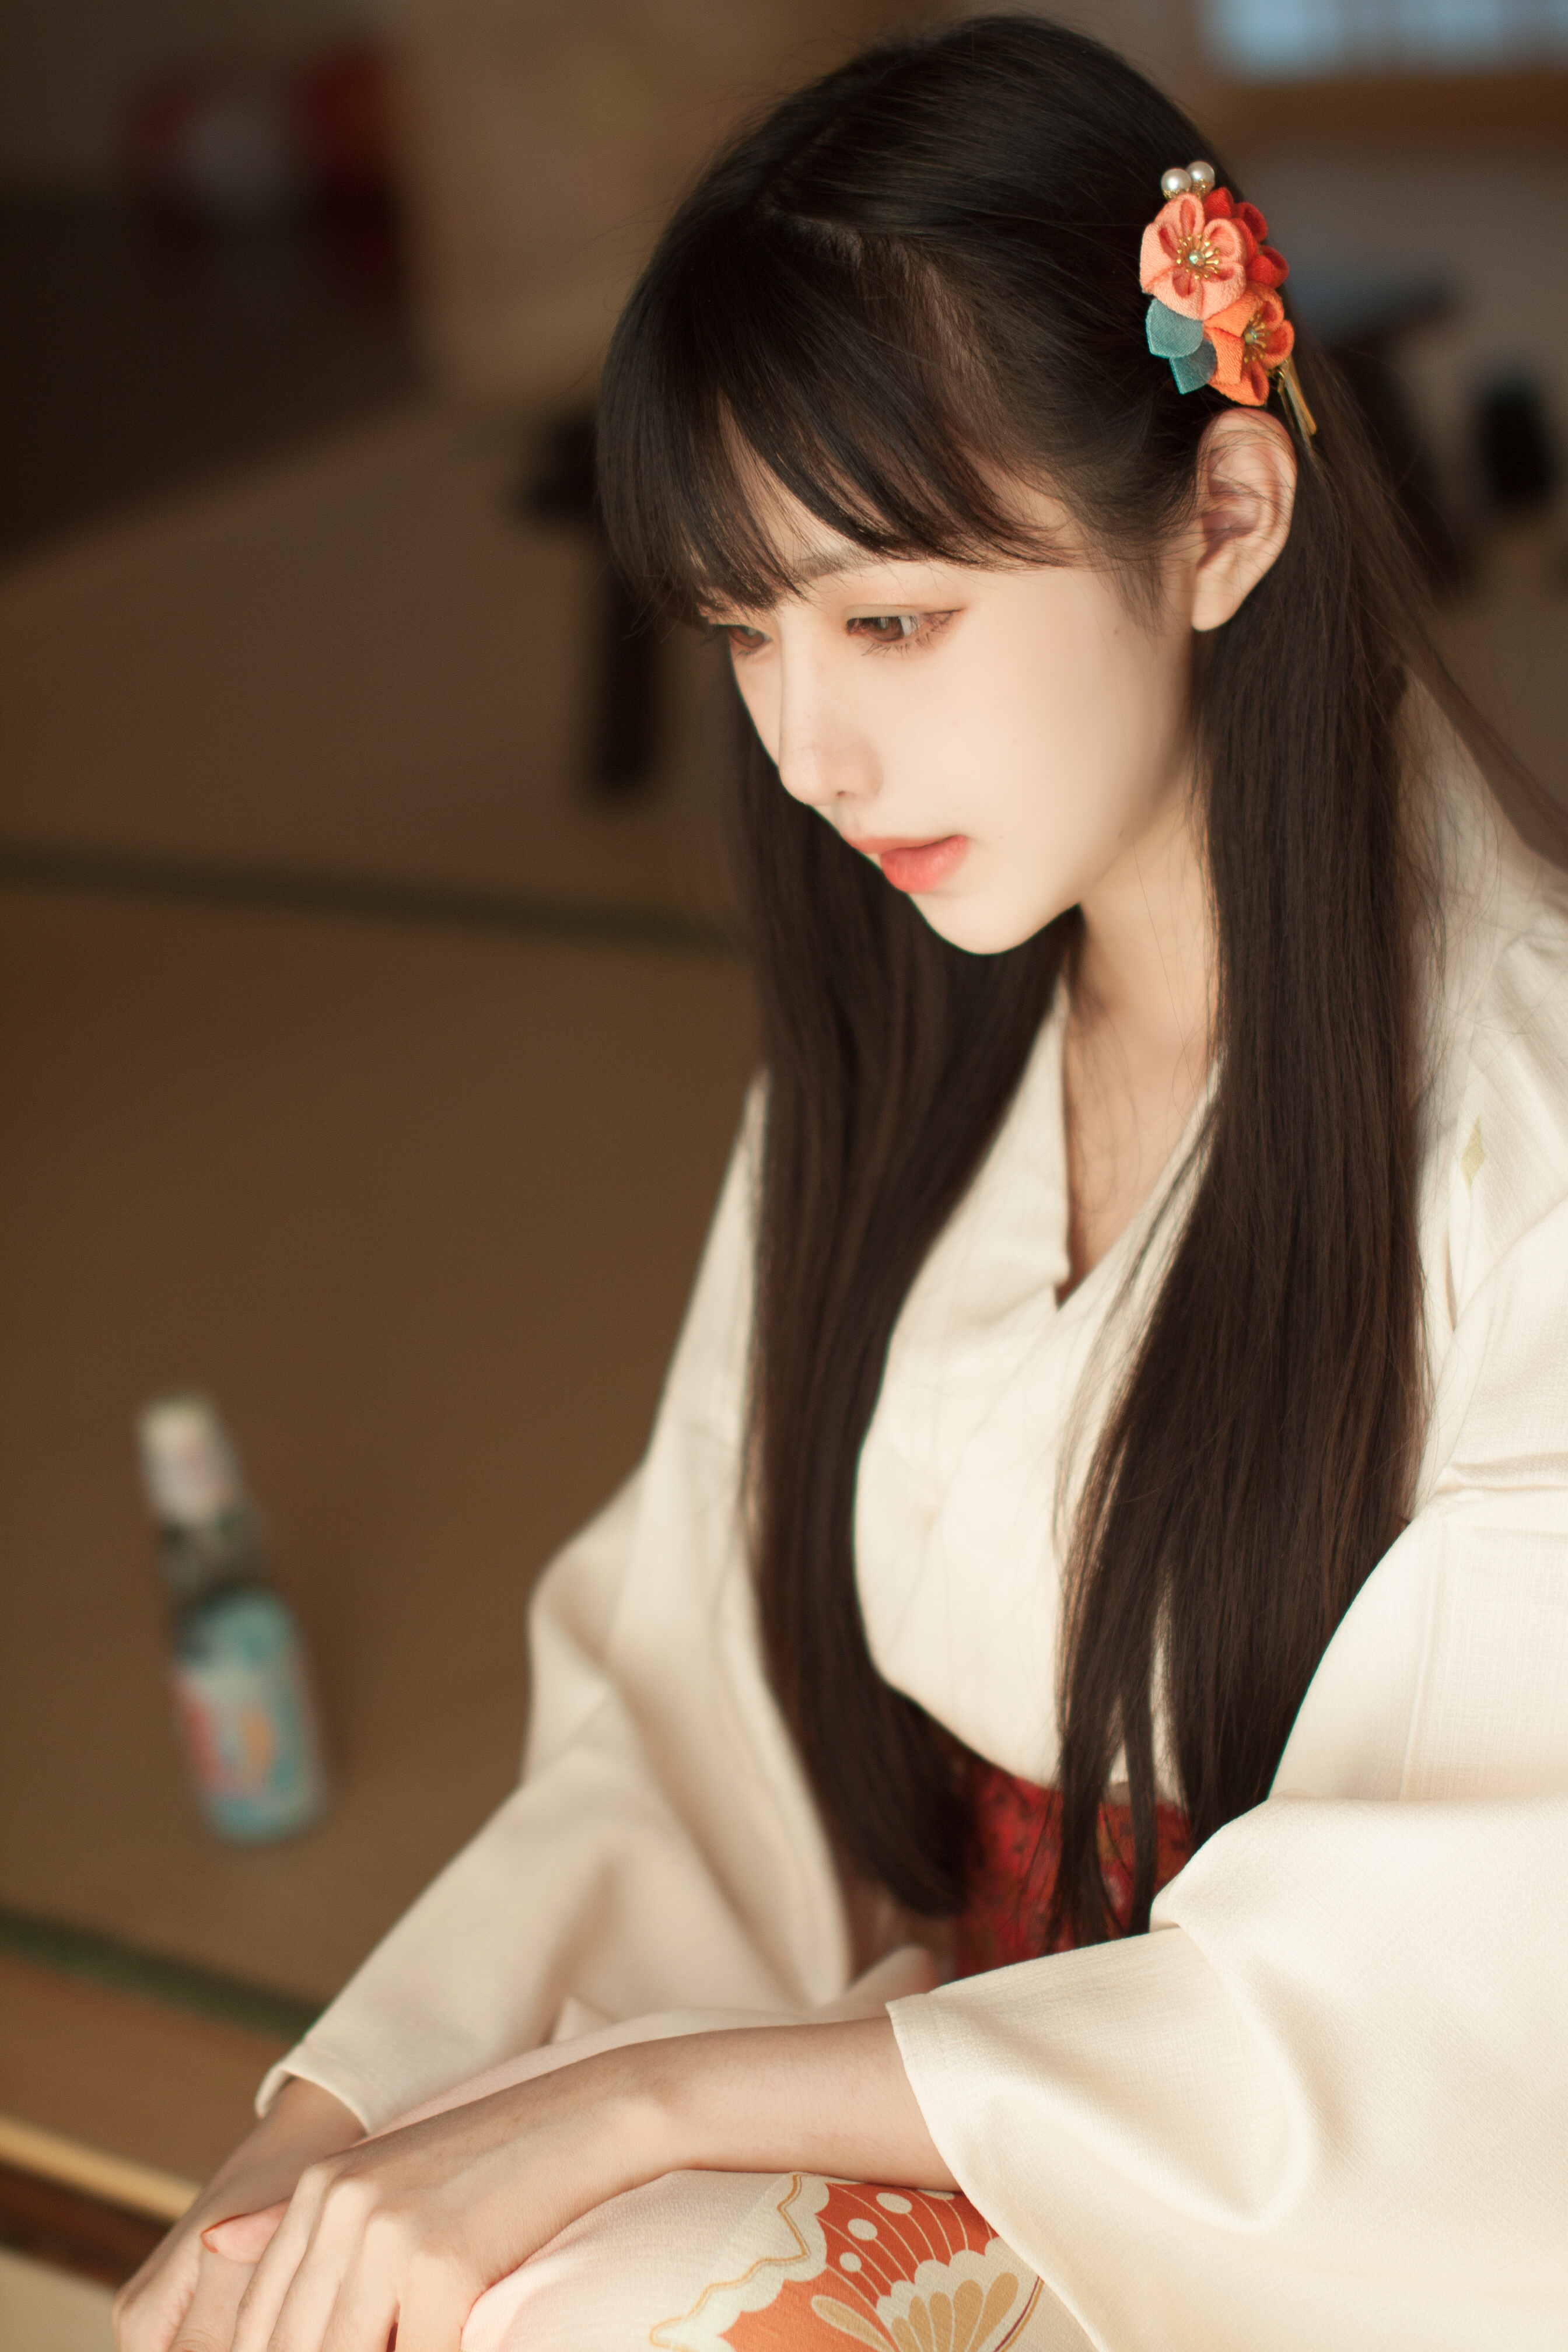 Asian Long Hair Black Hair Kimono Tatami Living Rooms Women Shika XiaoLu 2688x4032